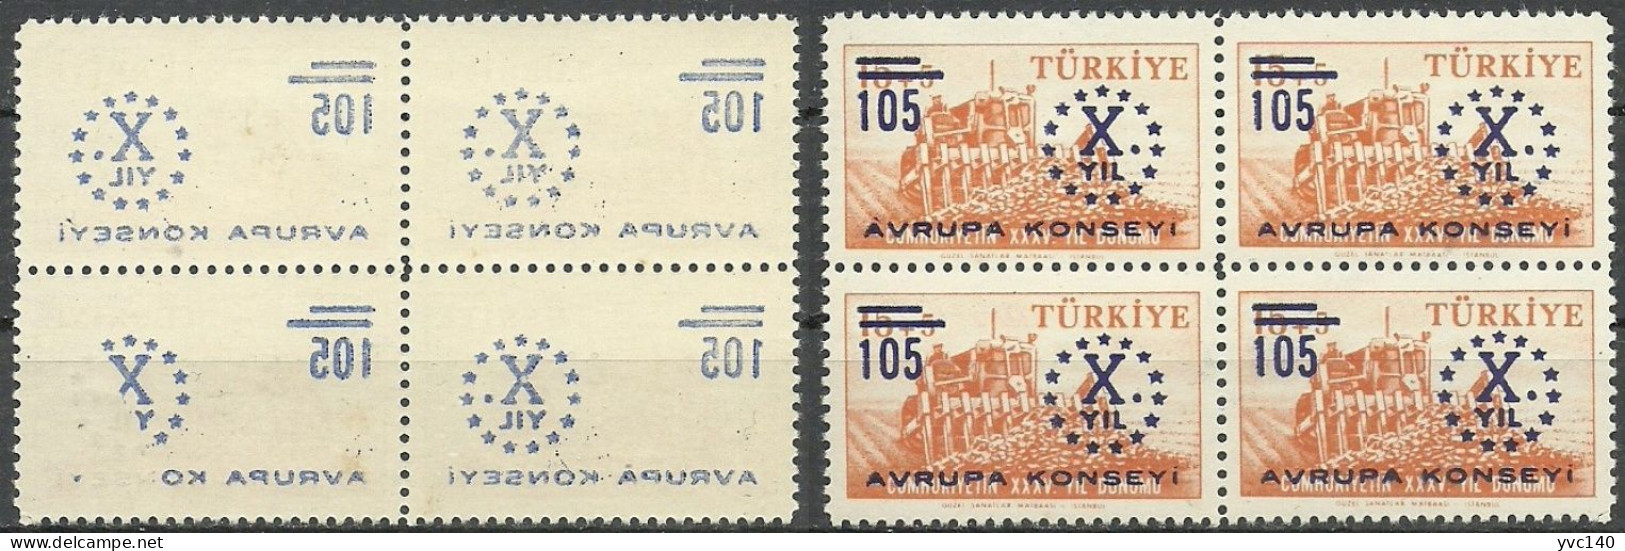 Turkey; 1959 10th Anniv. Of The Council Of Europe ERROR "Abklatsch Surcharge" - Ongebruikt